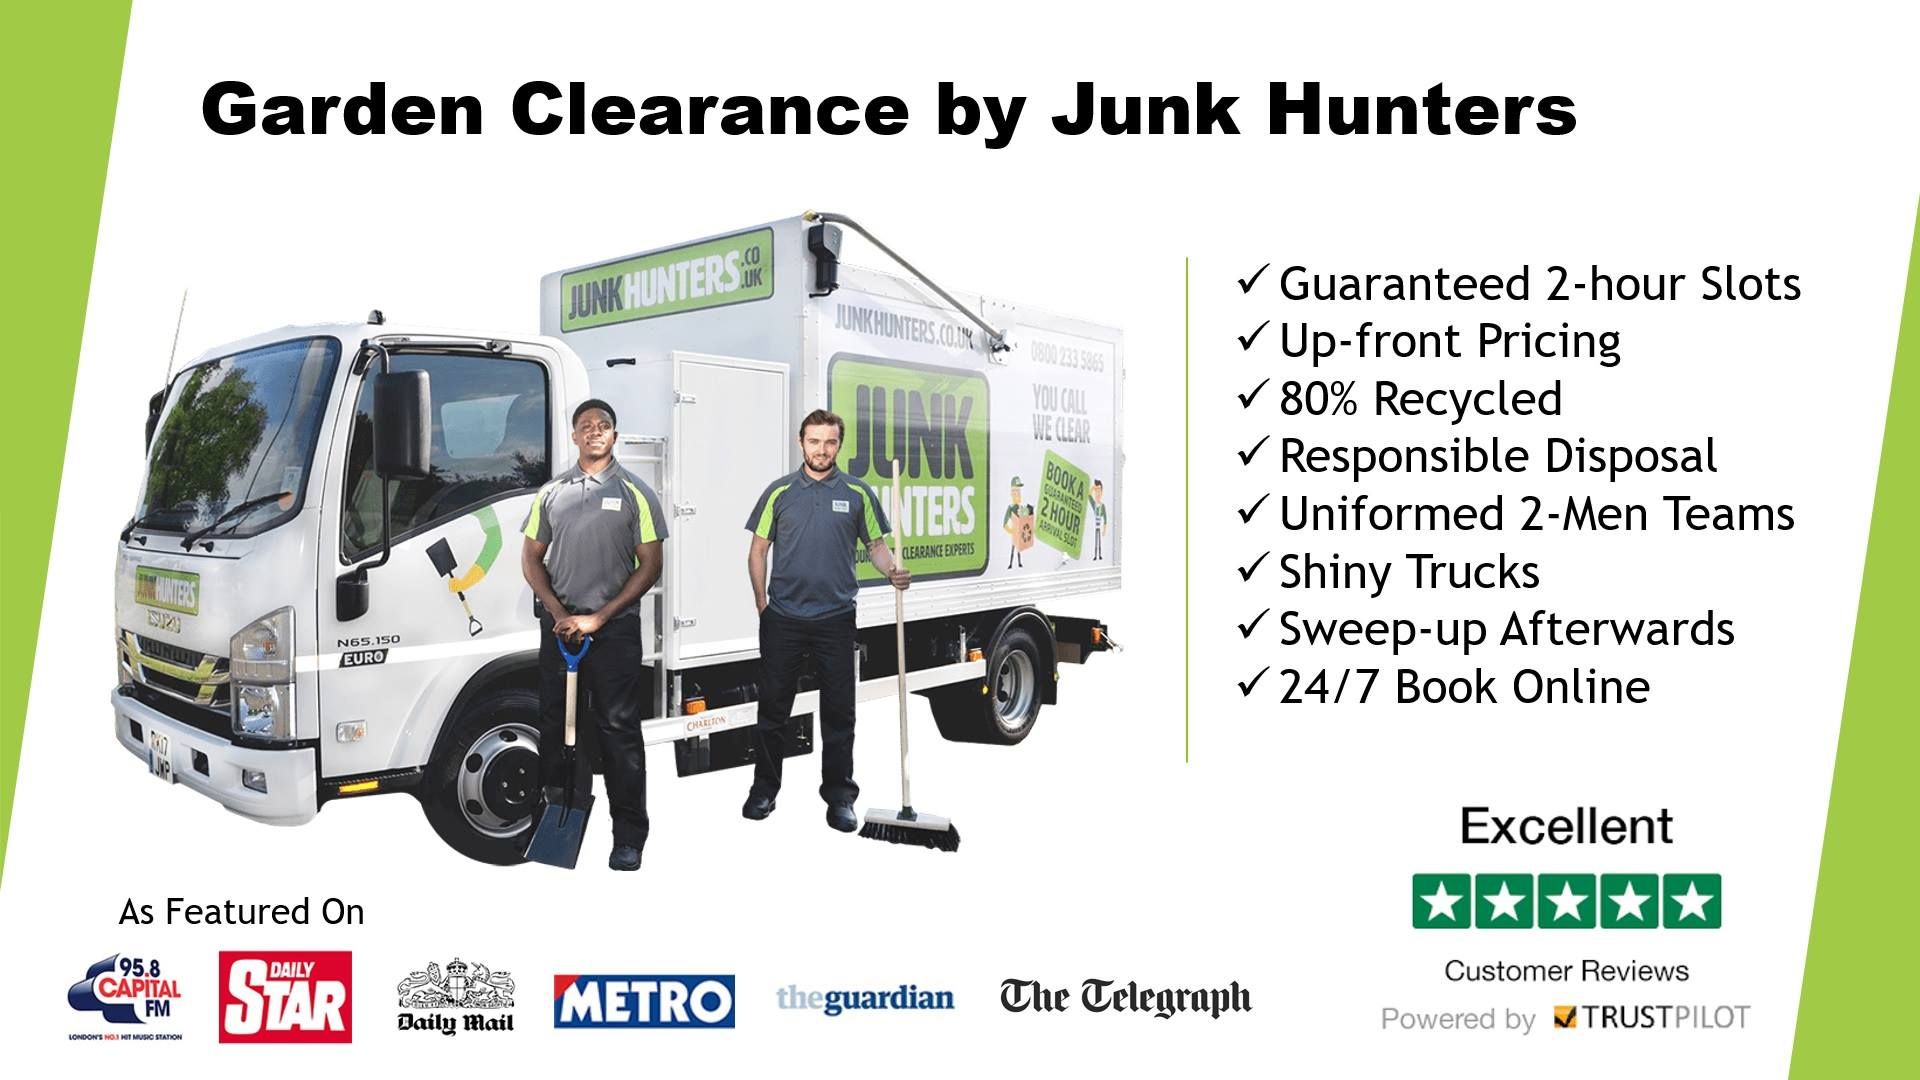 Junk Hunters Ltd